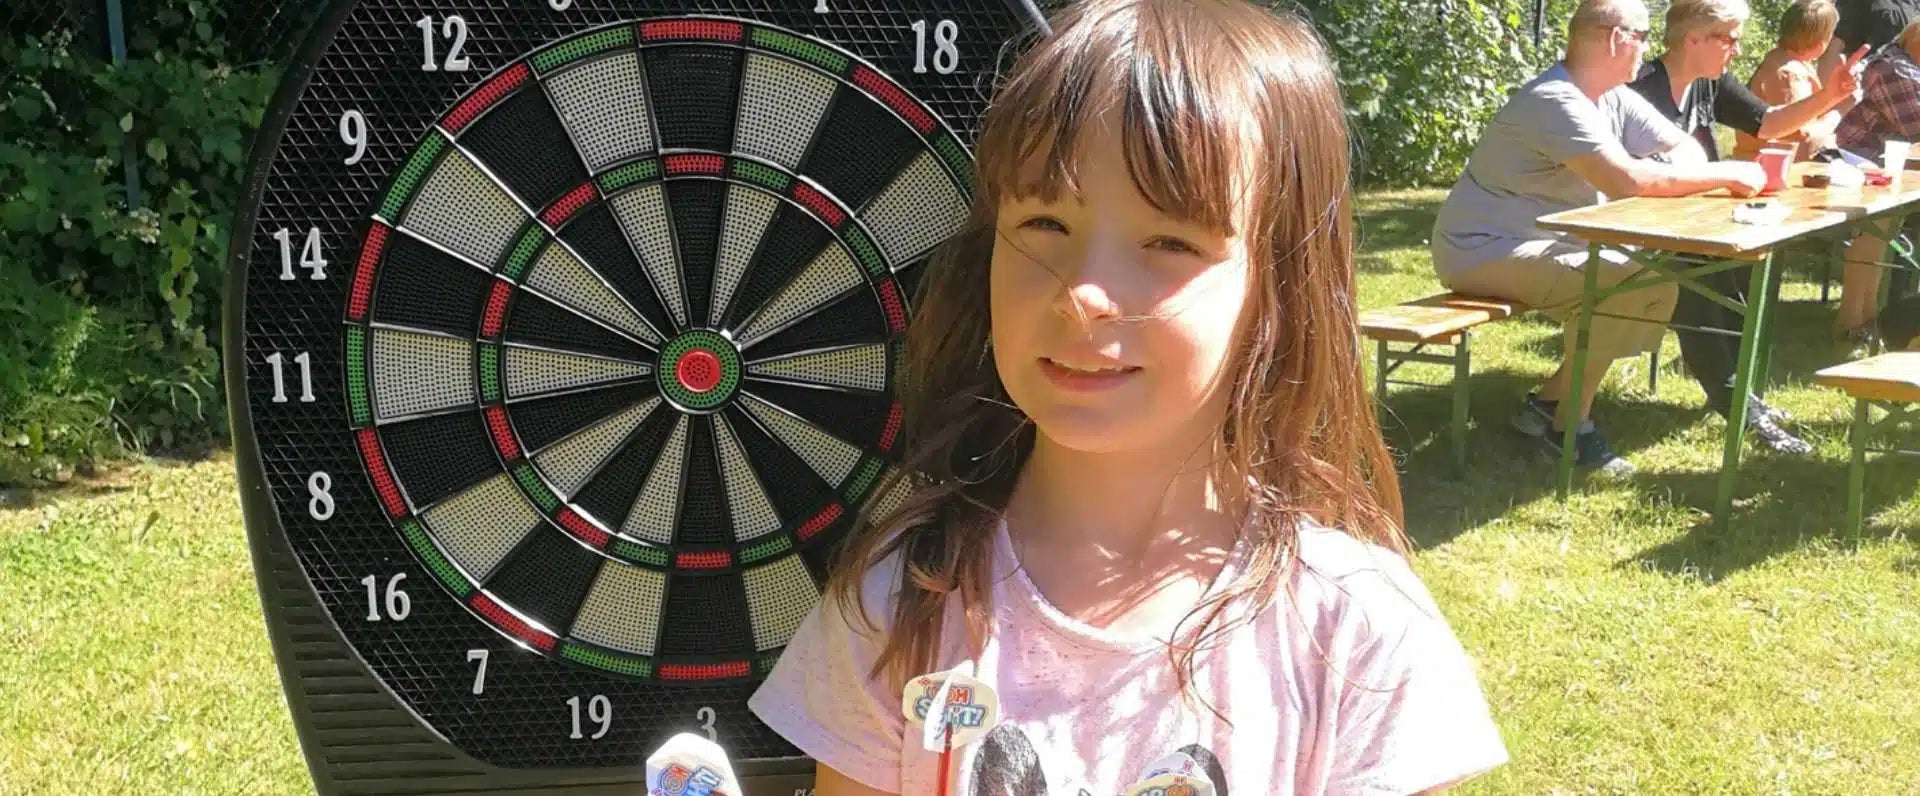 Darts for children: Is darts suitable for children? - myDart